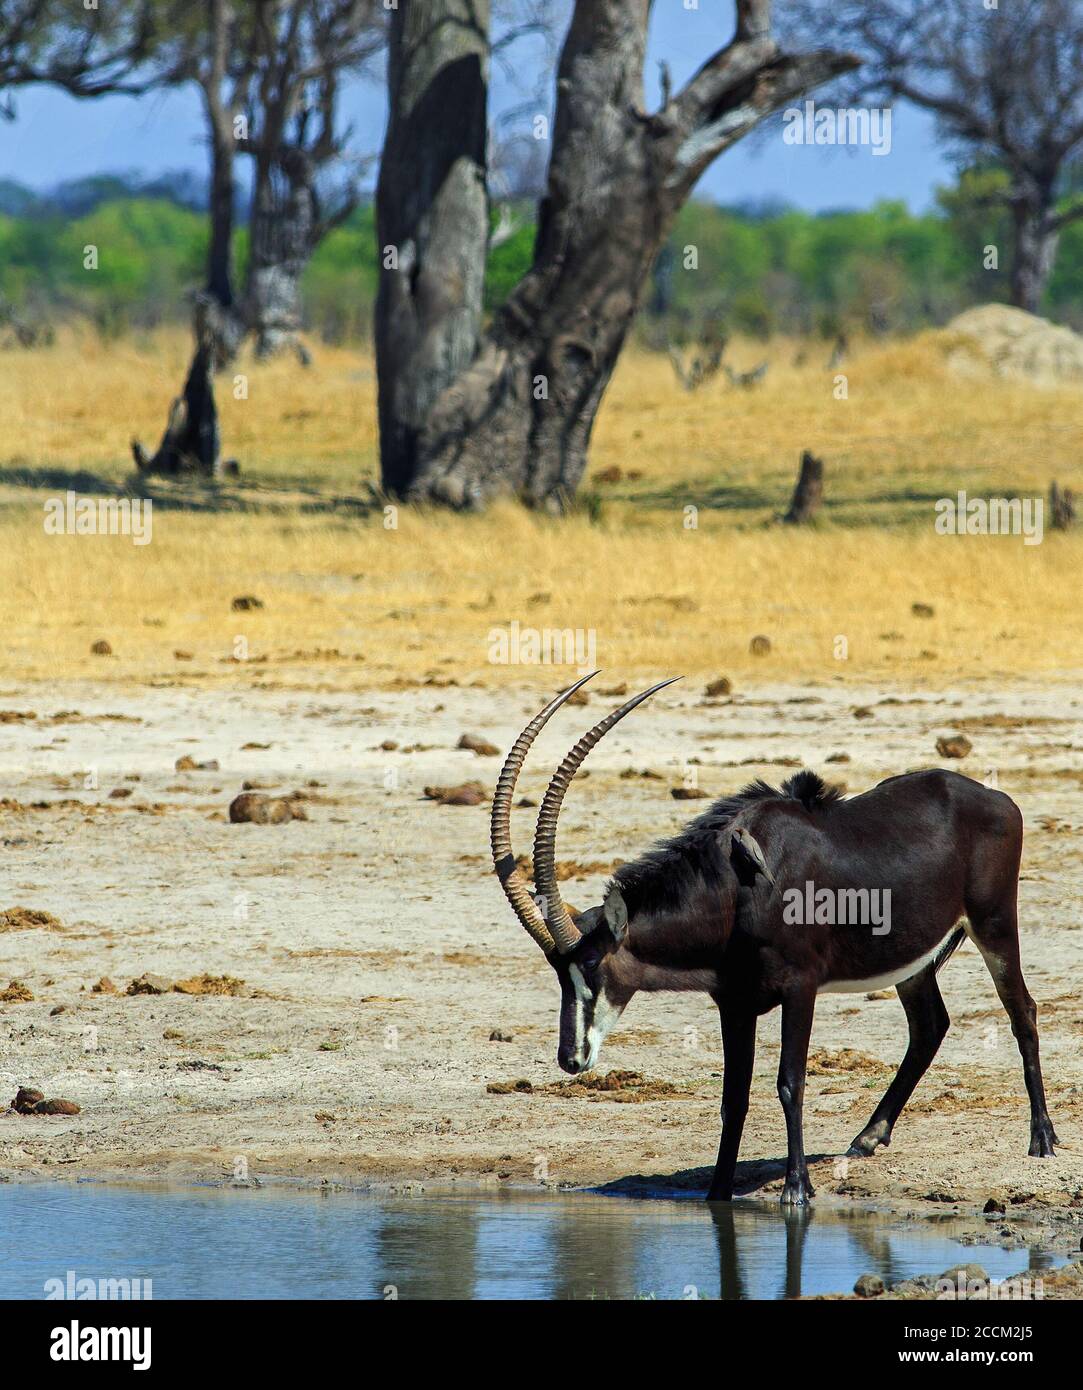 Antilope mâle de sable à boire à partir d'une petite piscine d'eau. La savane environnante est jaune en raison des pluies qui n'apparaissent pas. Hwange Banque D'Images